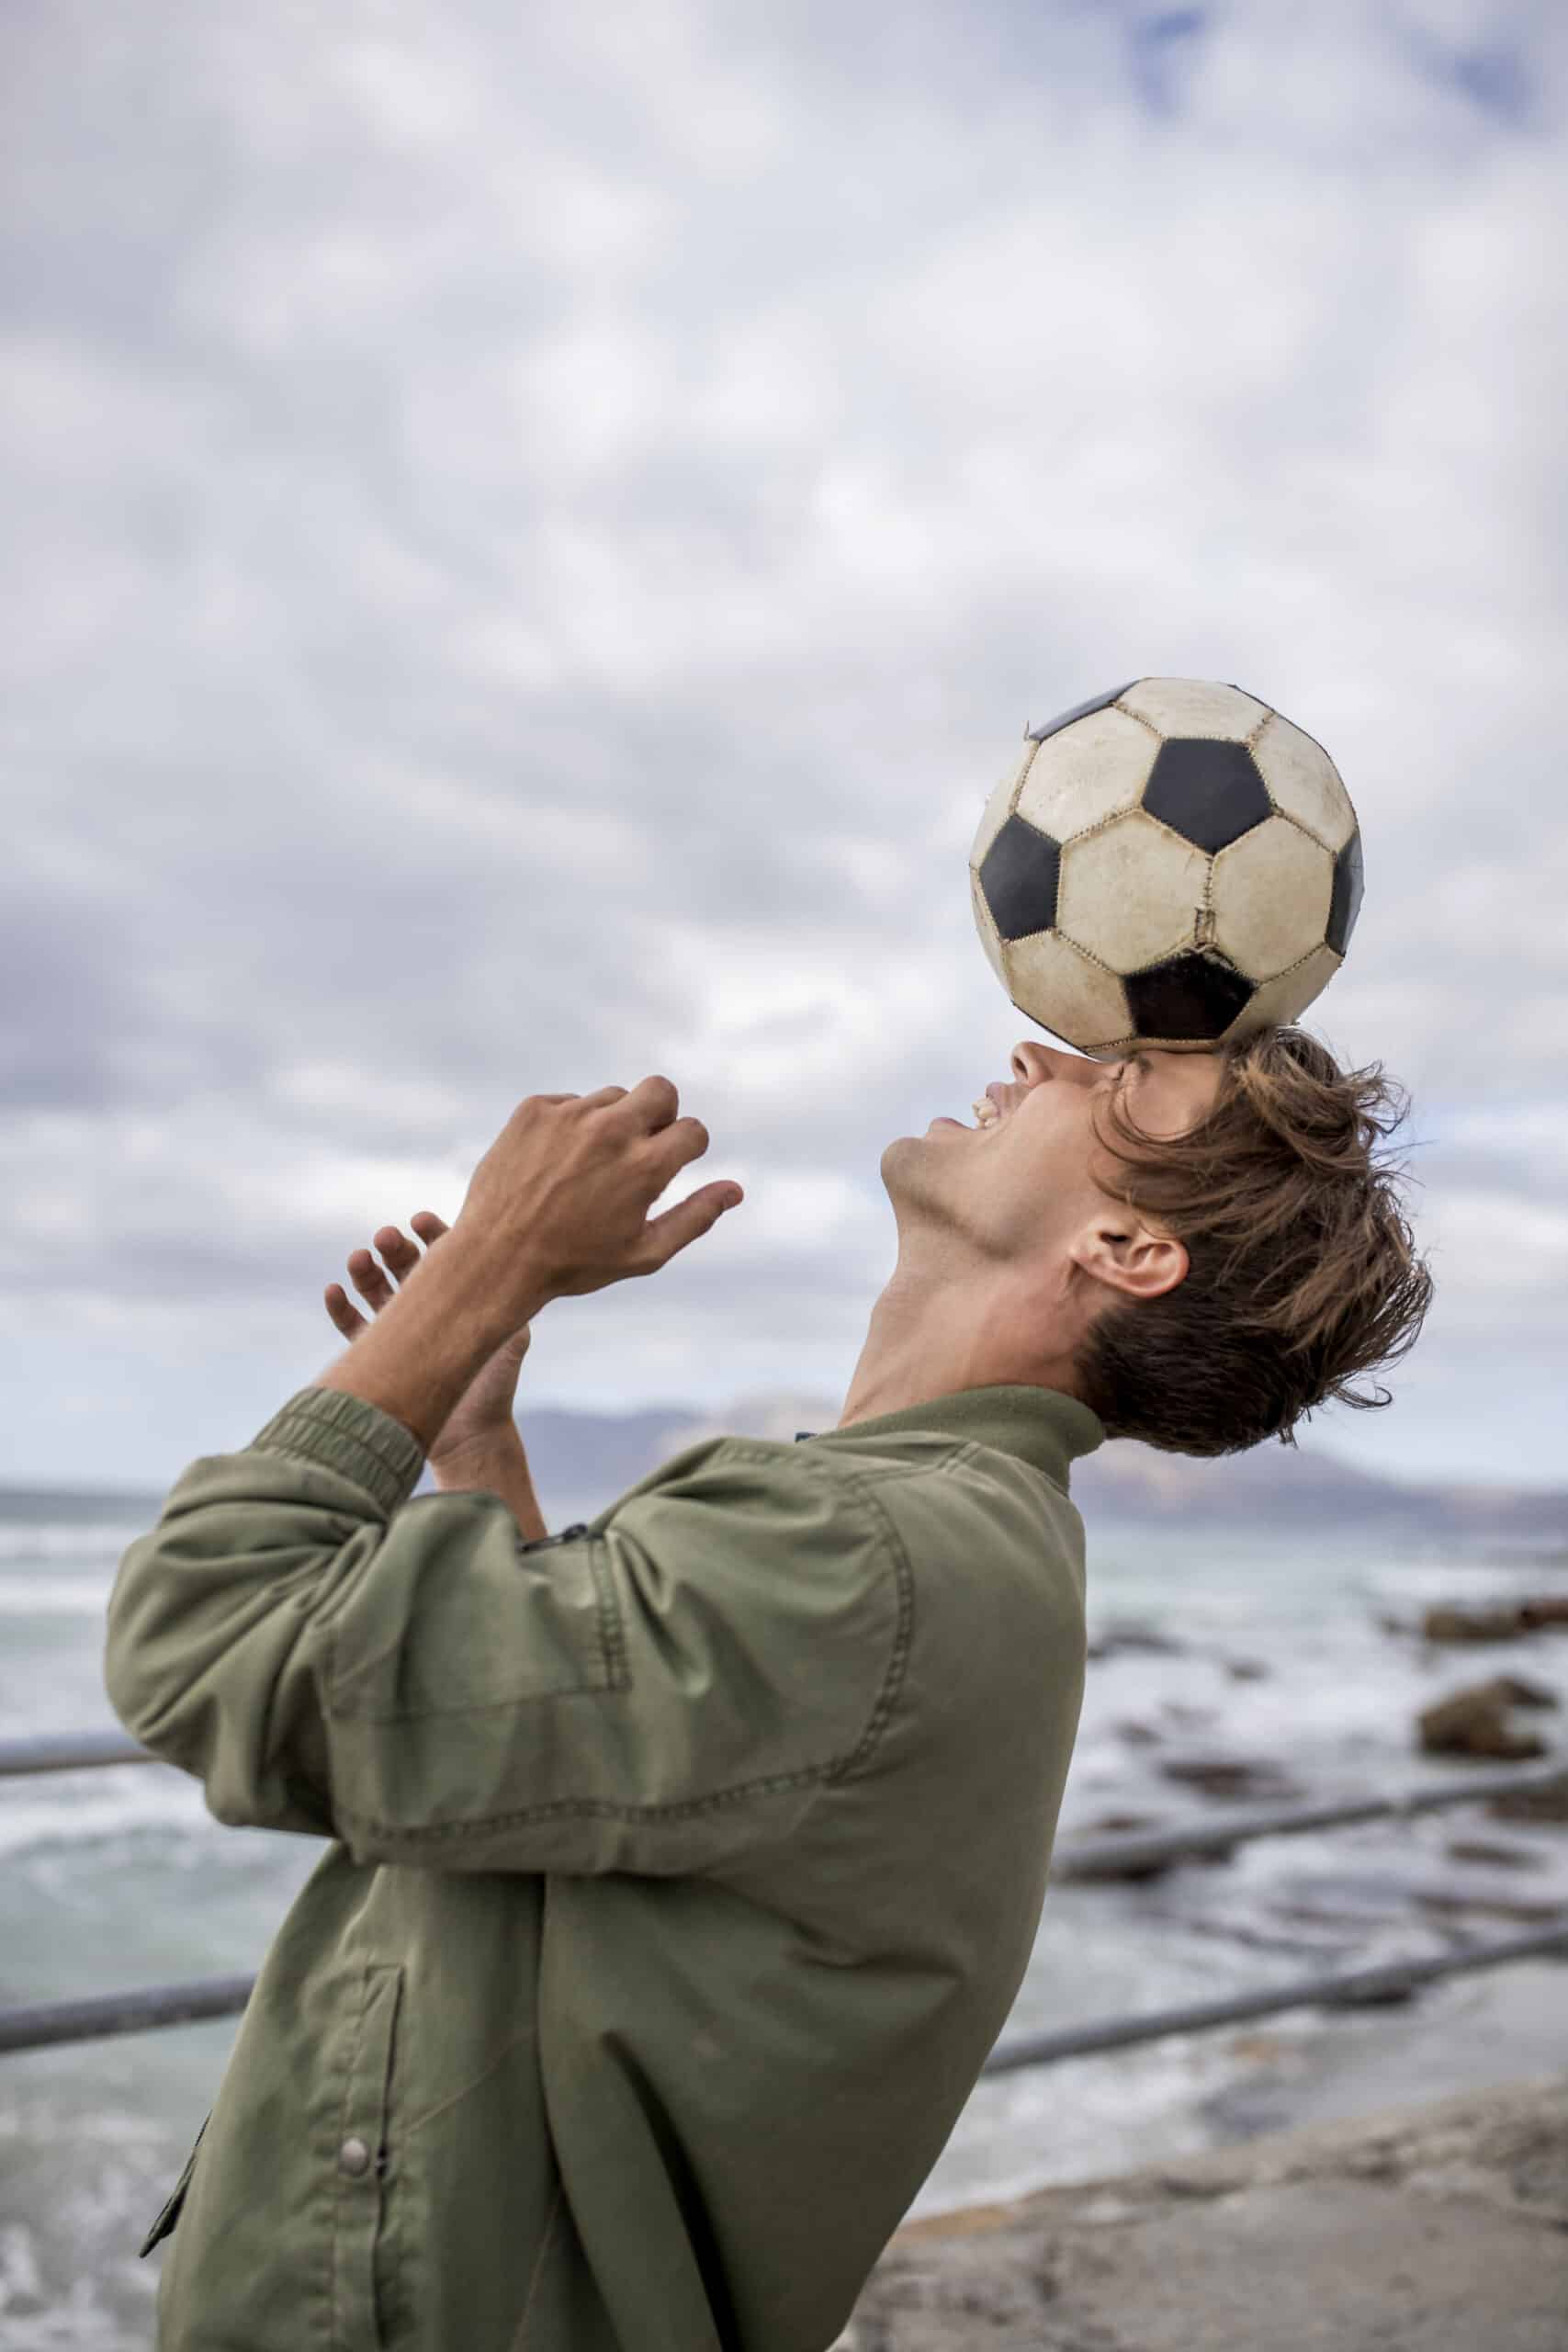 Ein junger Mann balanciert einen Fußball auf seiner Stirn am Meer, über ihm ist ein bewölkter Himmel und im Hintergrund sind Felsen zu sehen. Er trägt eine grüne Jacke und blickt aufmerksam nach oben. © Fotografie Tomas Rodriguez